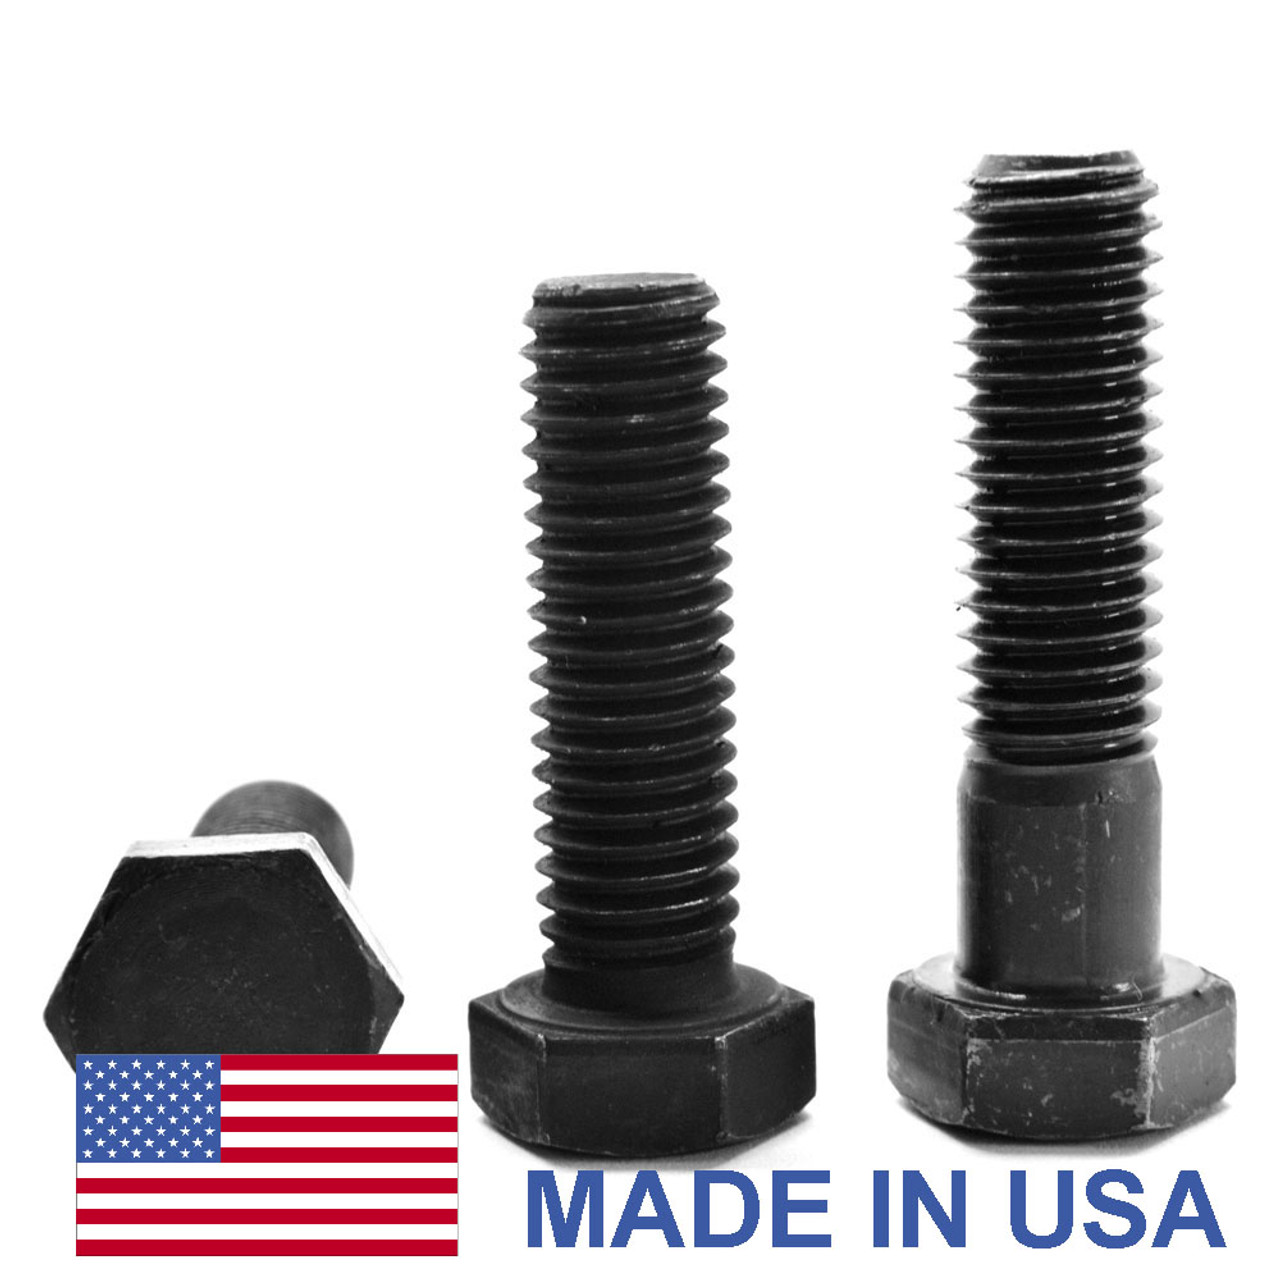 1"-14 x 6 1/2" (PT) UNS Thread Grade 8 Hex Cap Screw (Bolt) - USA Alloy Steel Black Oxide